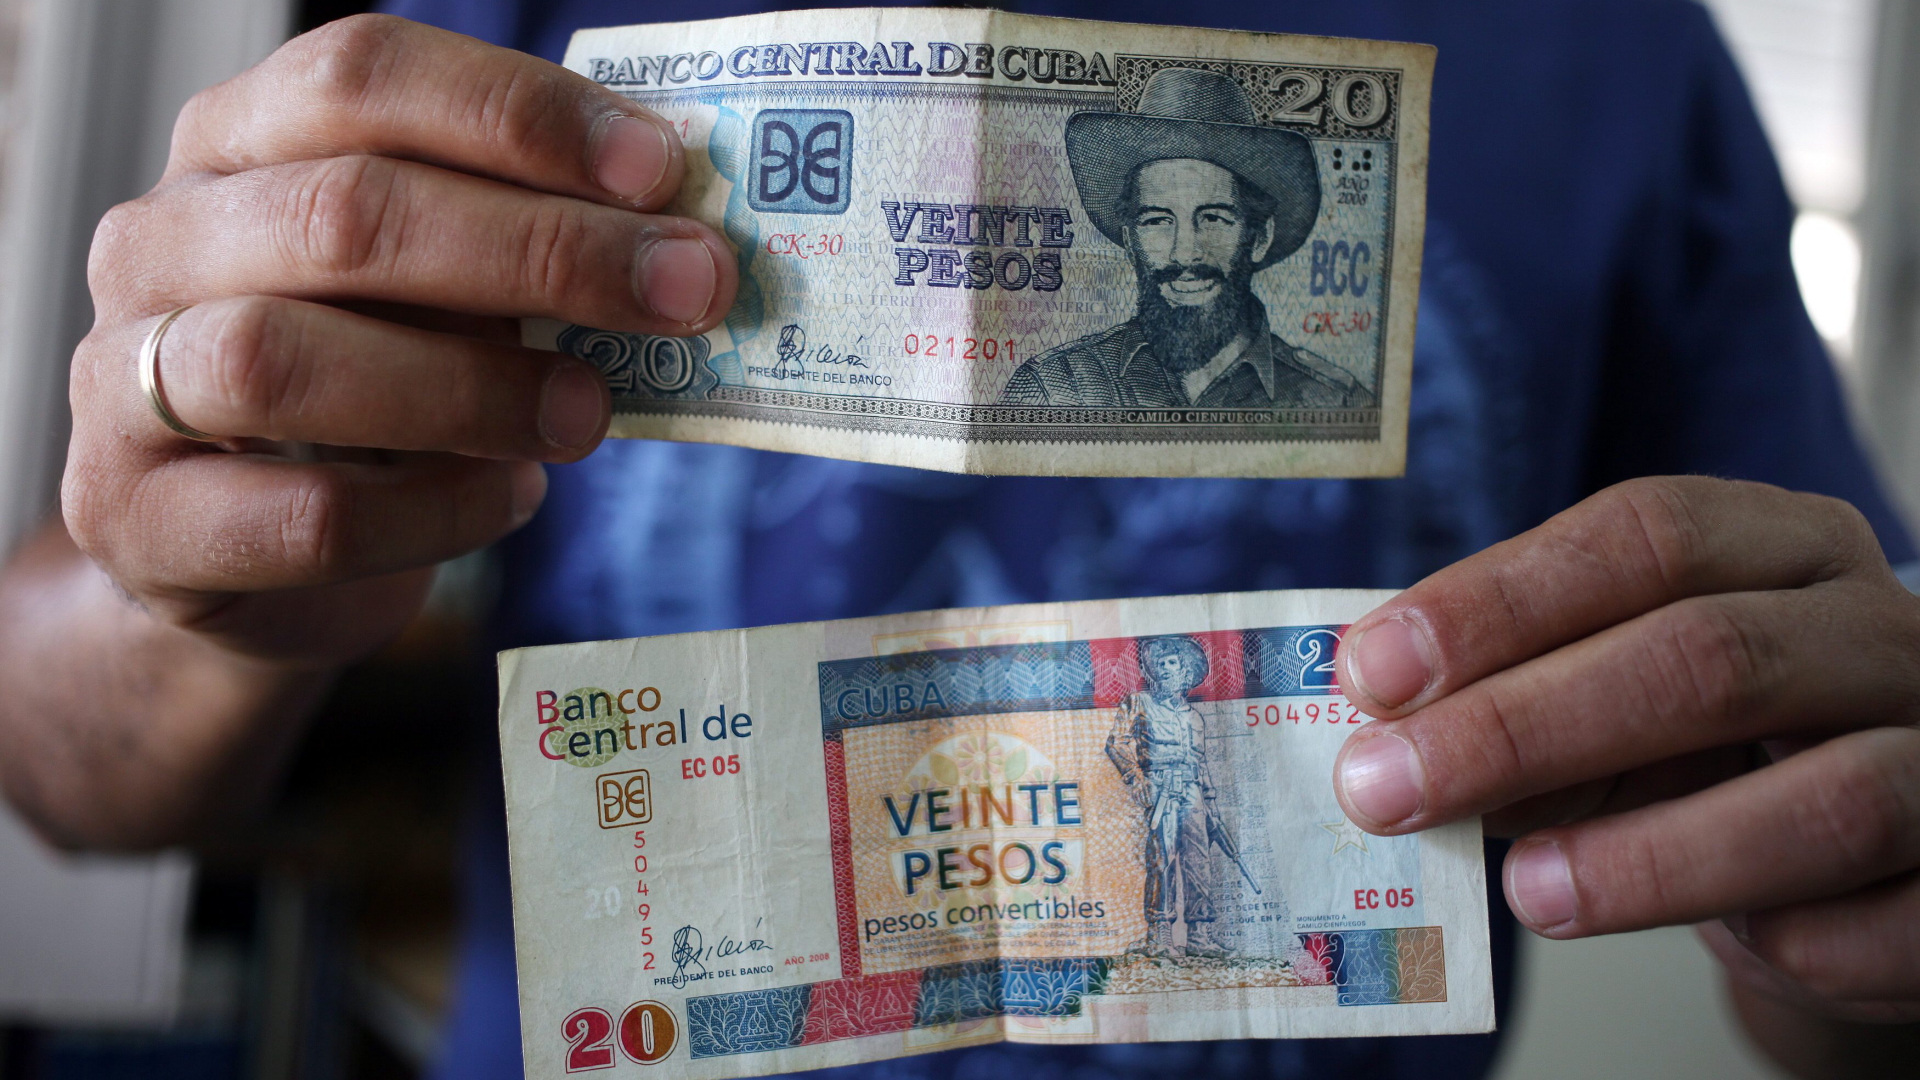 Peso Reform: Kuba beendet doppeltes Währungssystem | Bildquelle: https://www.tagesschau.de/wirtschaft/weltwirtschaft/kuba-doppeltes-waehrungssystem-101.html © ARD | Bilder sind in der Regel urheberrechtlich geschützt